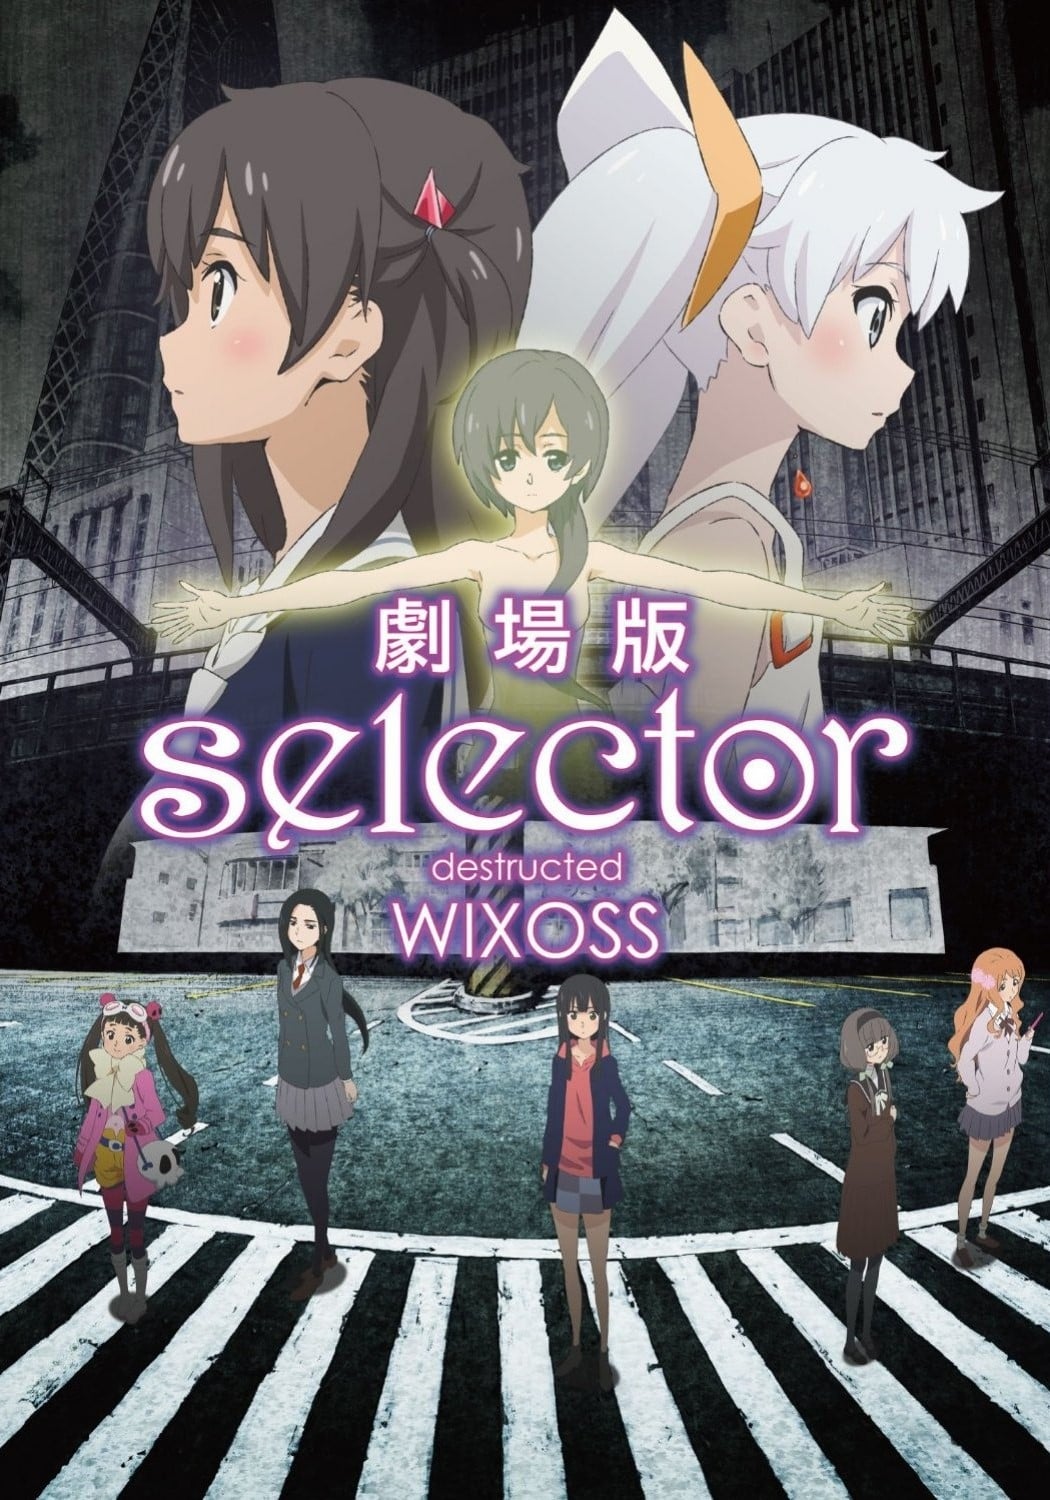 Gekijouban Selector Destructed WIXOSS Main Poster